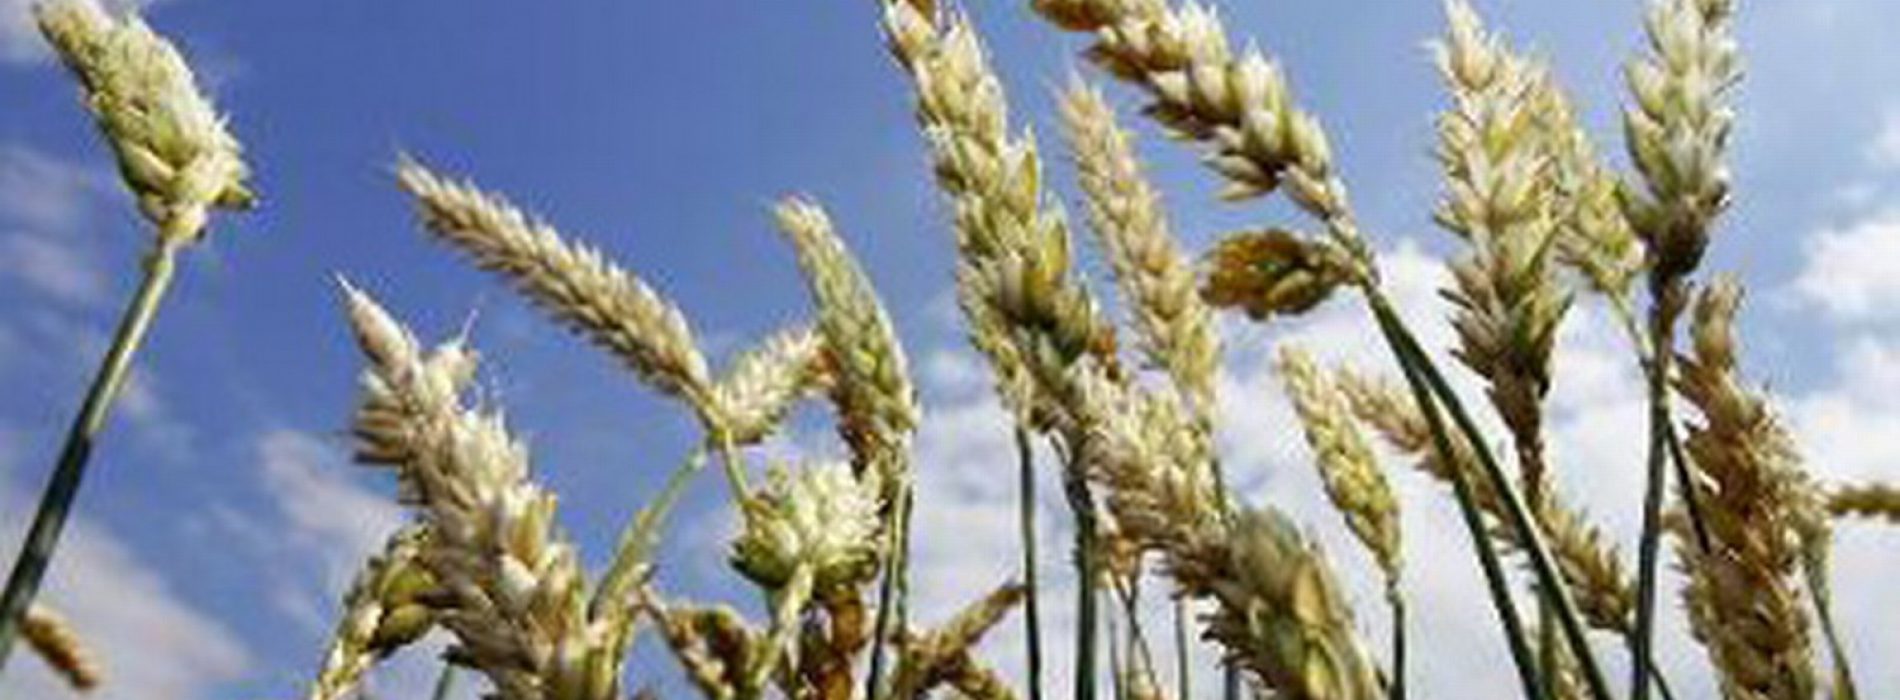 15 gezonde granen, alternatieven voor tarwe en witte rijst